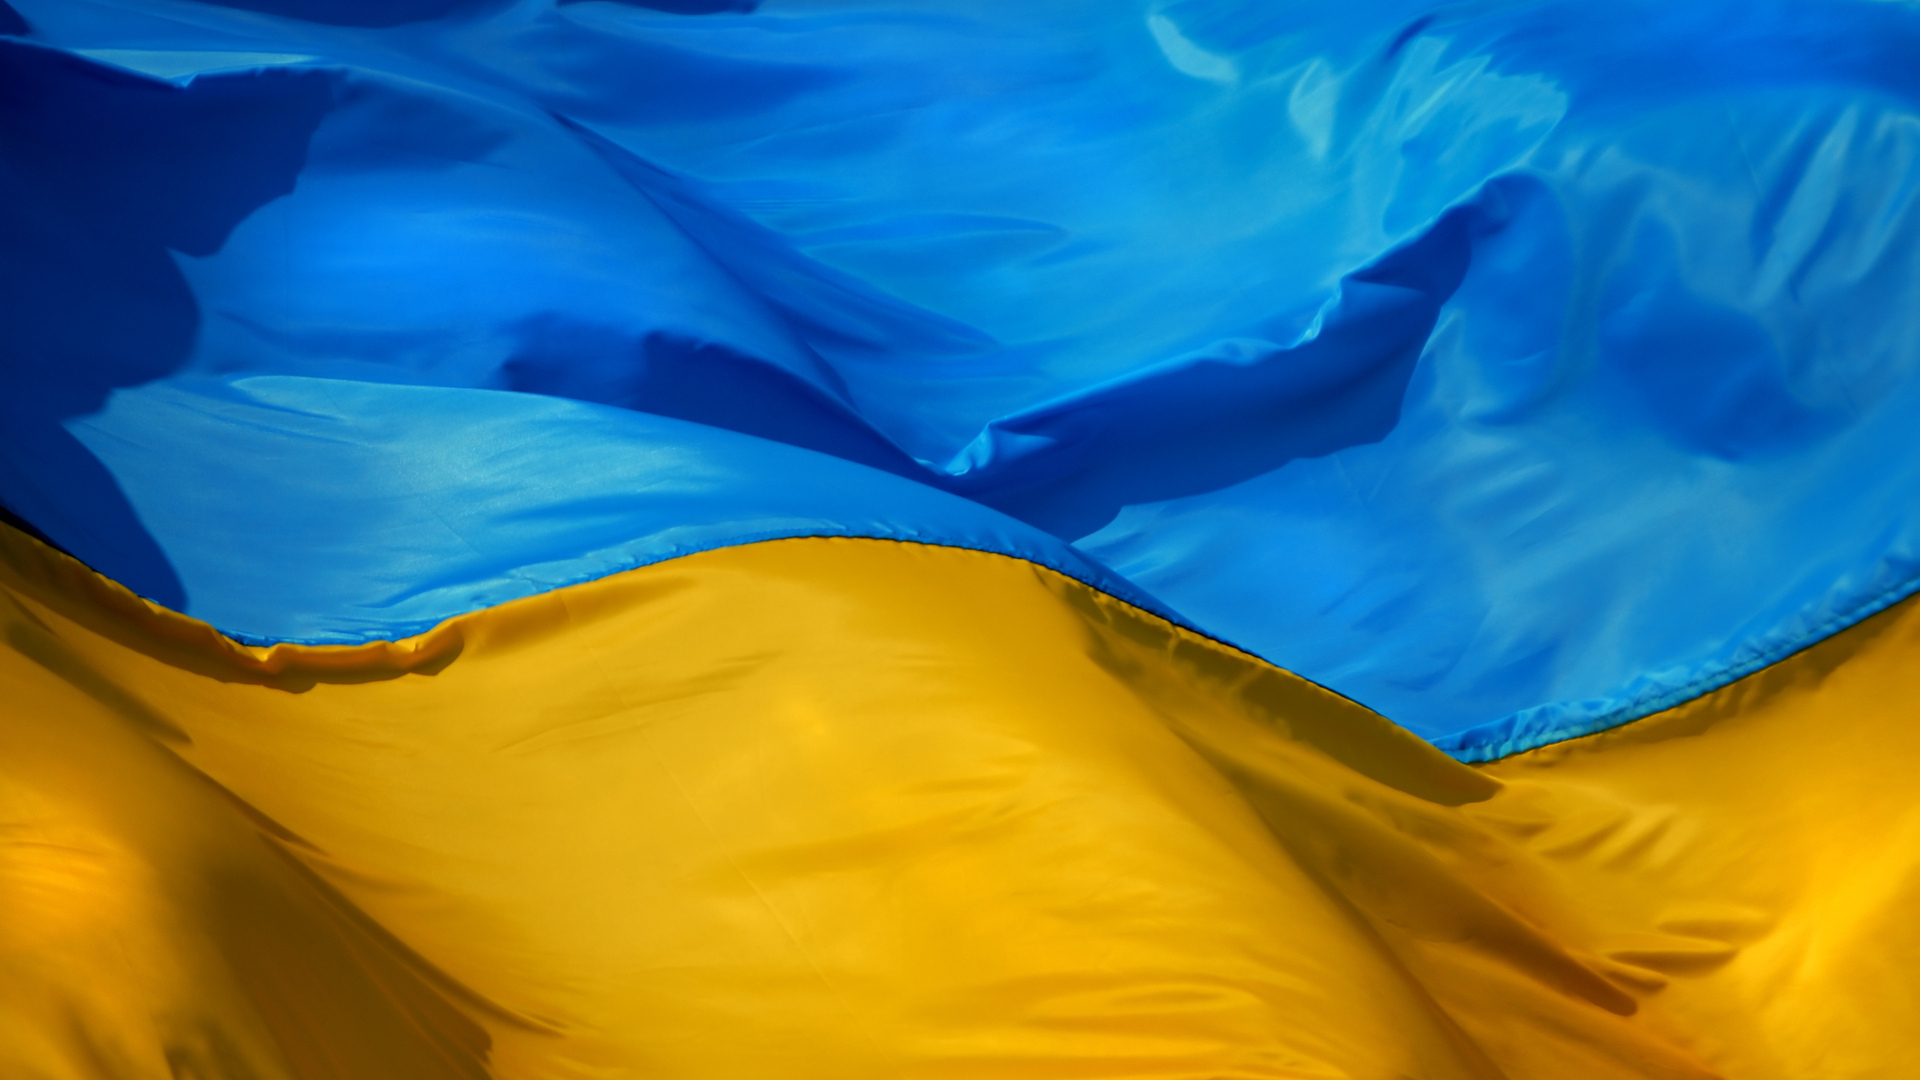 ukraine flag wallpaper android